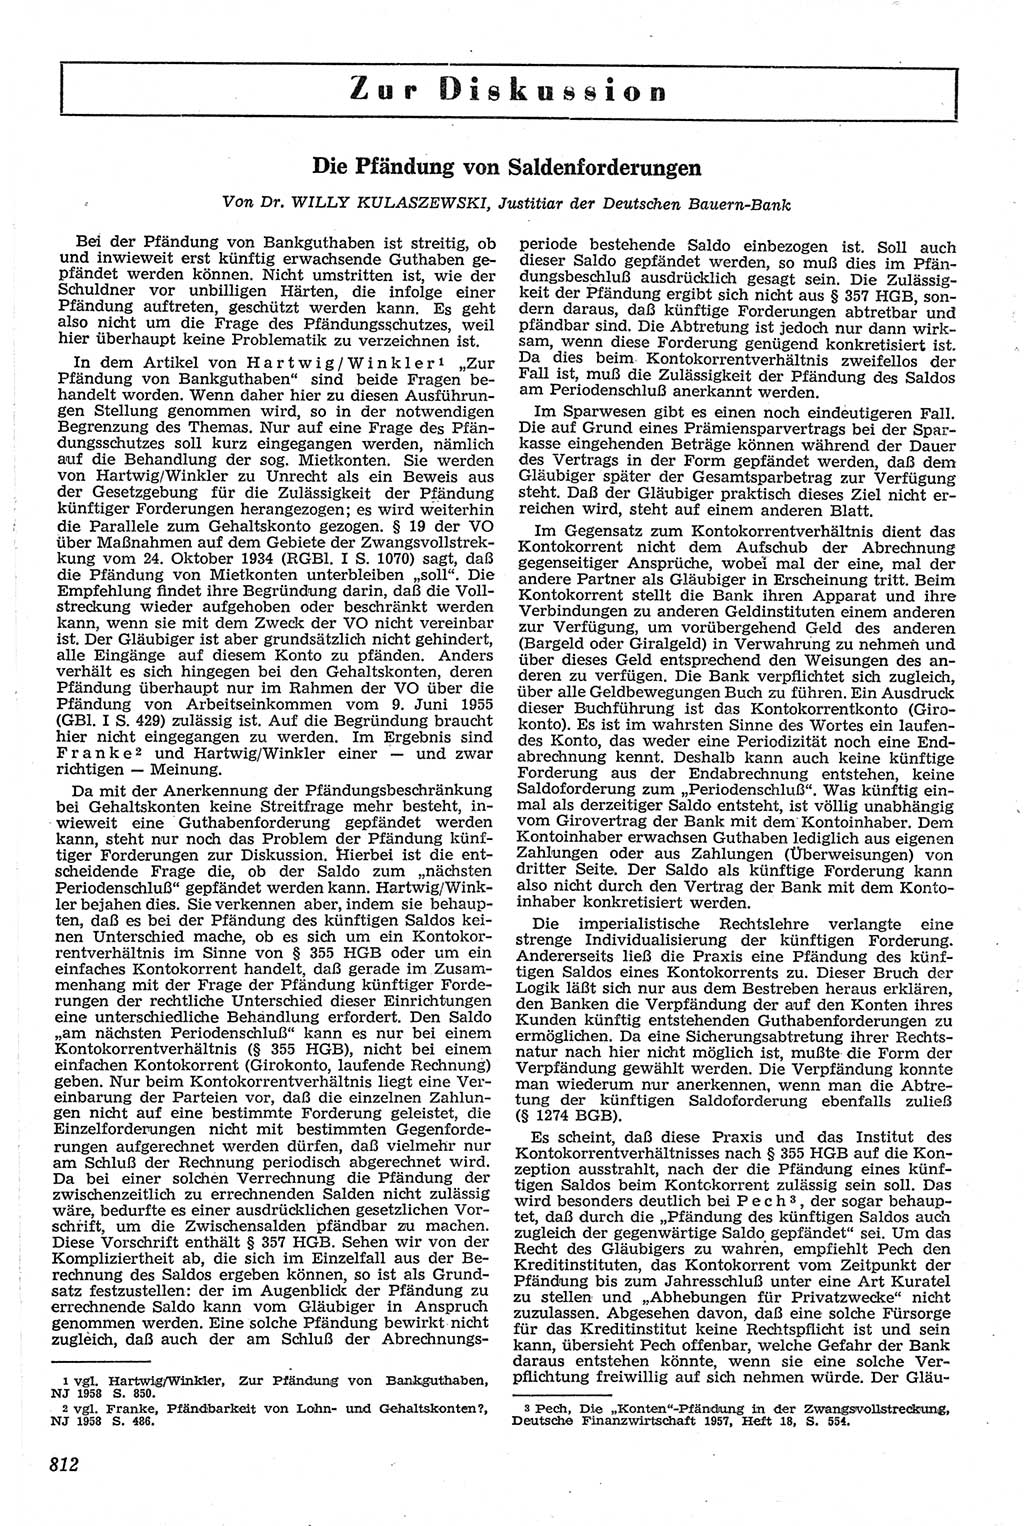 Neue Justiz (NJ), Zeitschrift für Recht und Rechtswissenschaft [Deutsche Demokratische Republik (DDR)], 13. Jahrgang 1959, Seite 812 (NJ DDR 1959, S. 812)